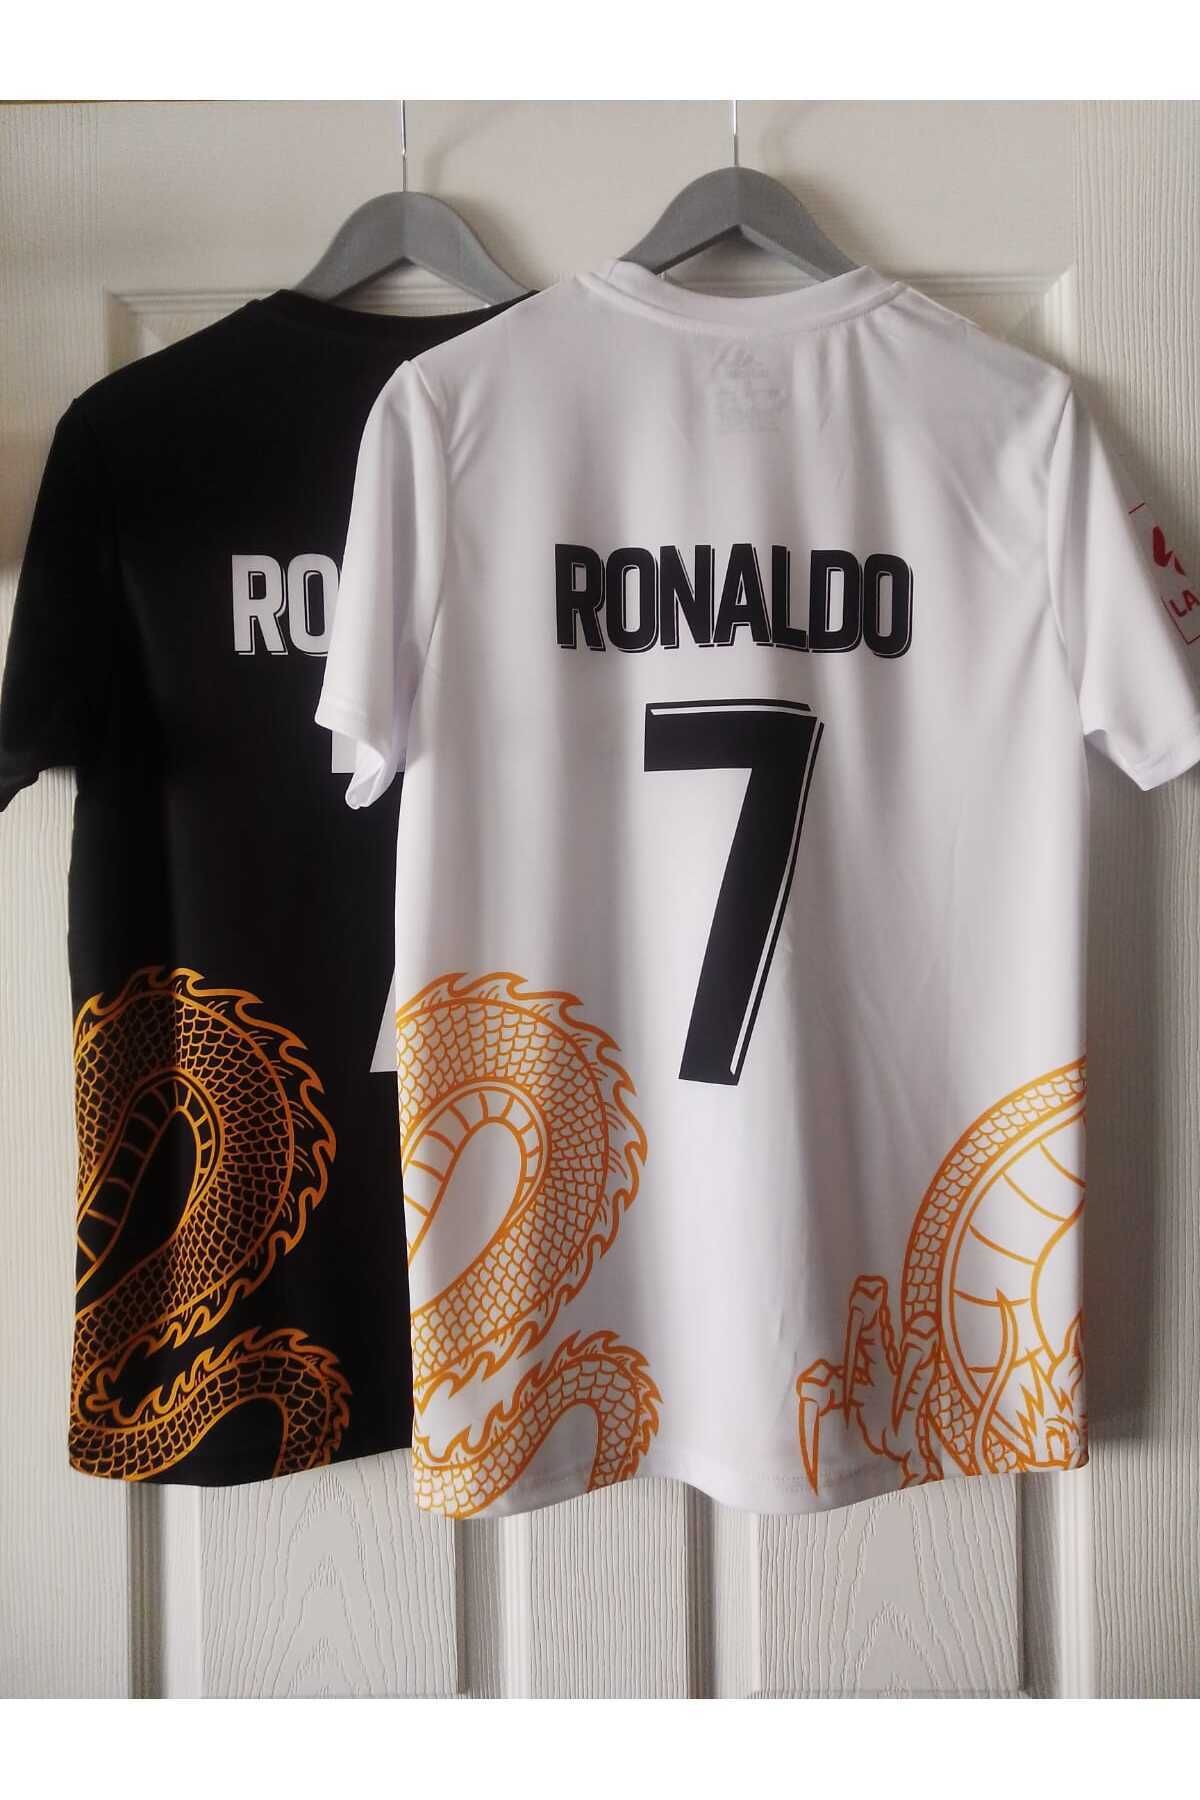 Armageddon Ronaldo Real Madrıd Yeni Sezon Ejder Özel Konsept 2li Forma Tişört Seti Sıyah Beyaz Altın